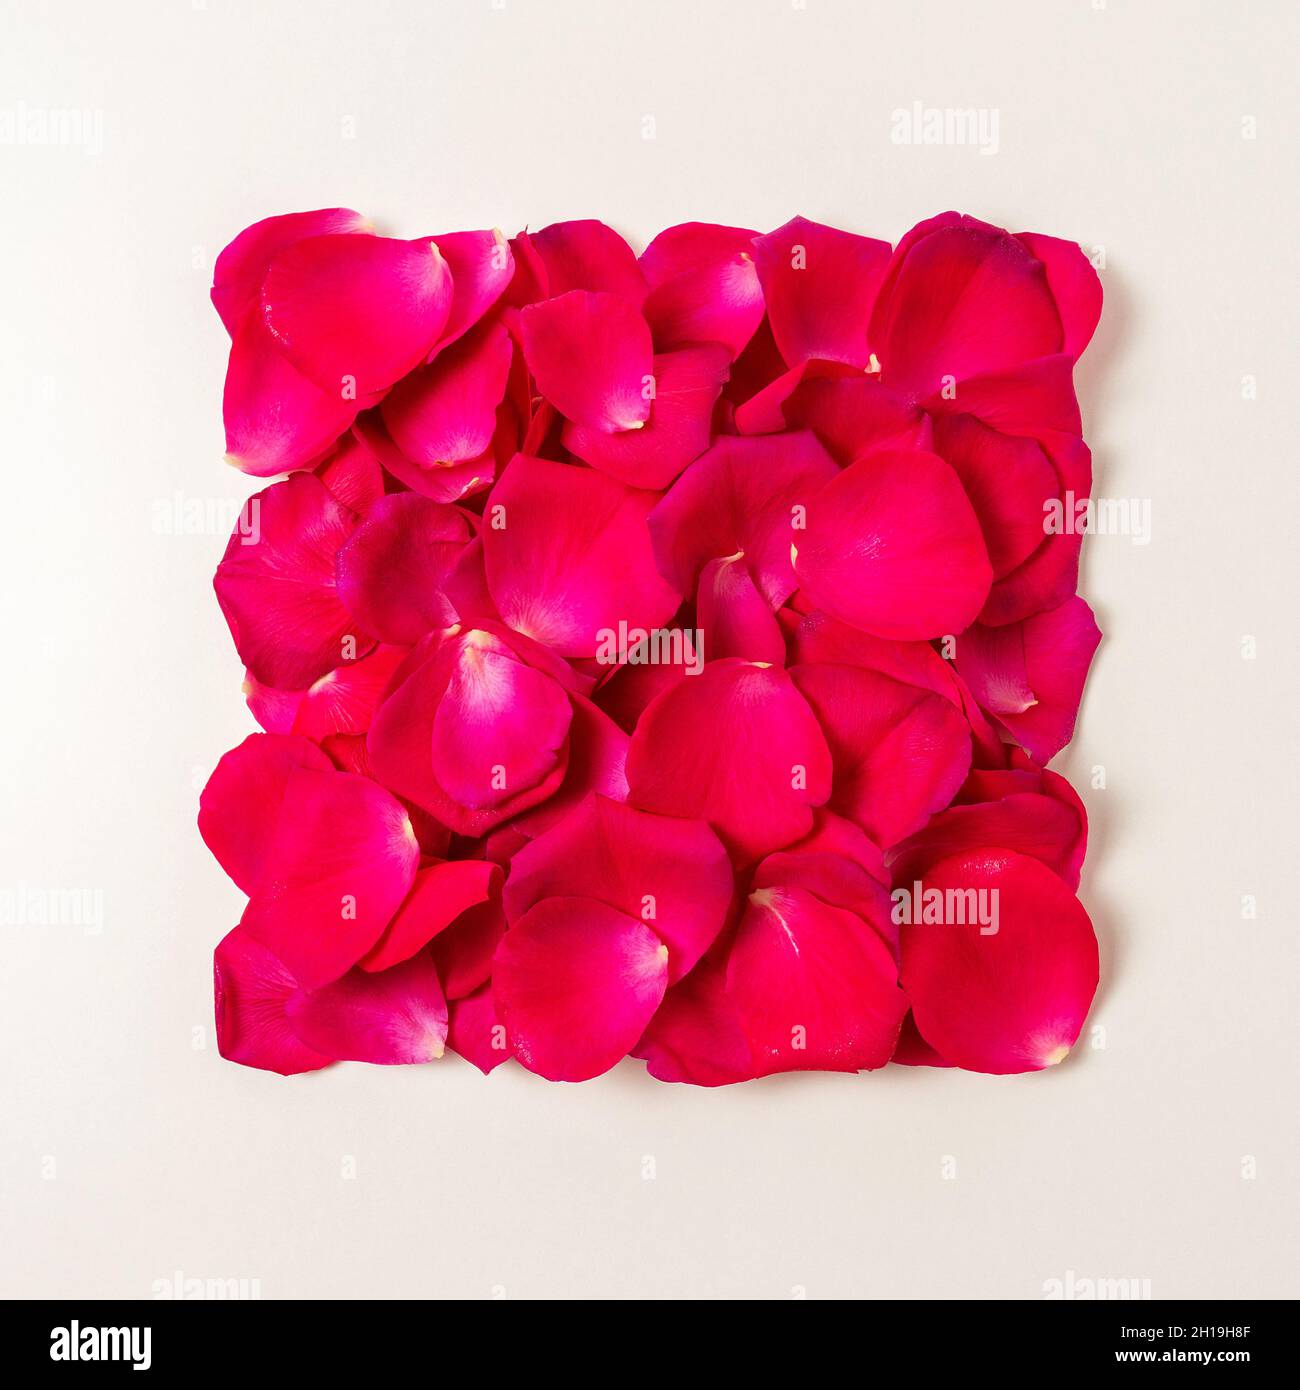 Diseño creativo hecho con pétalos de rosas y rosas rojas. Mínimo